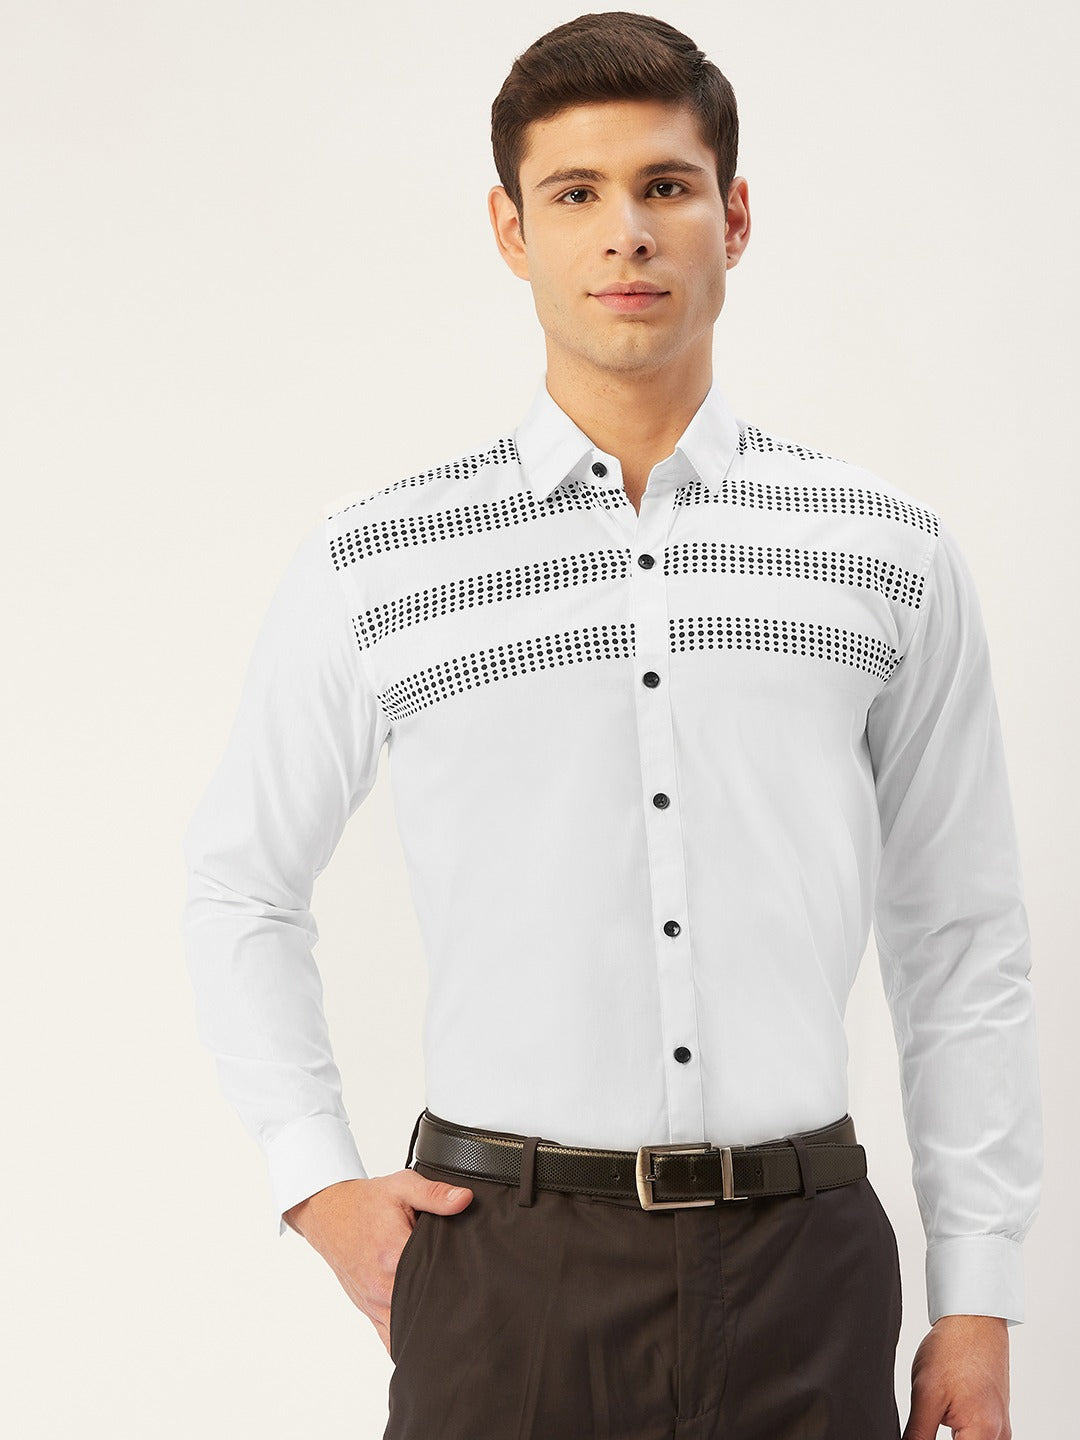 Men's Cotton Printed Formal Shirts ( SF 805White ) - Jainish